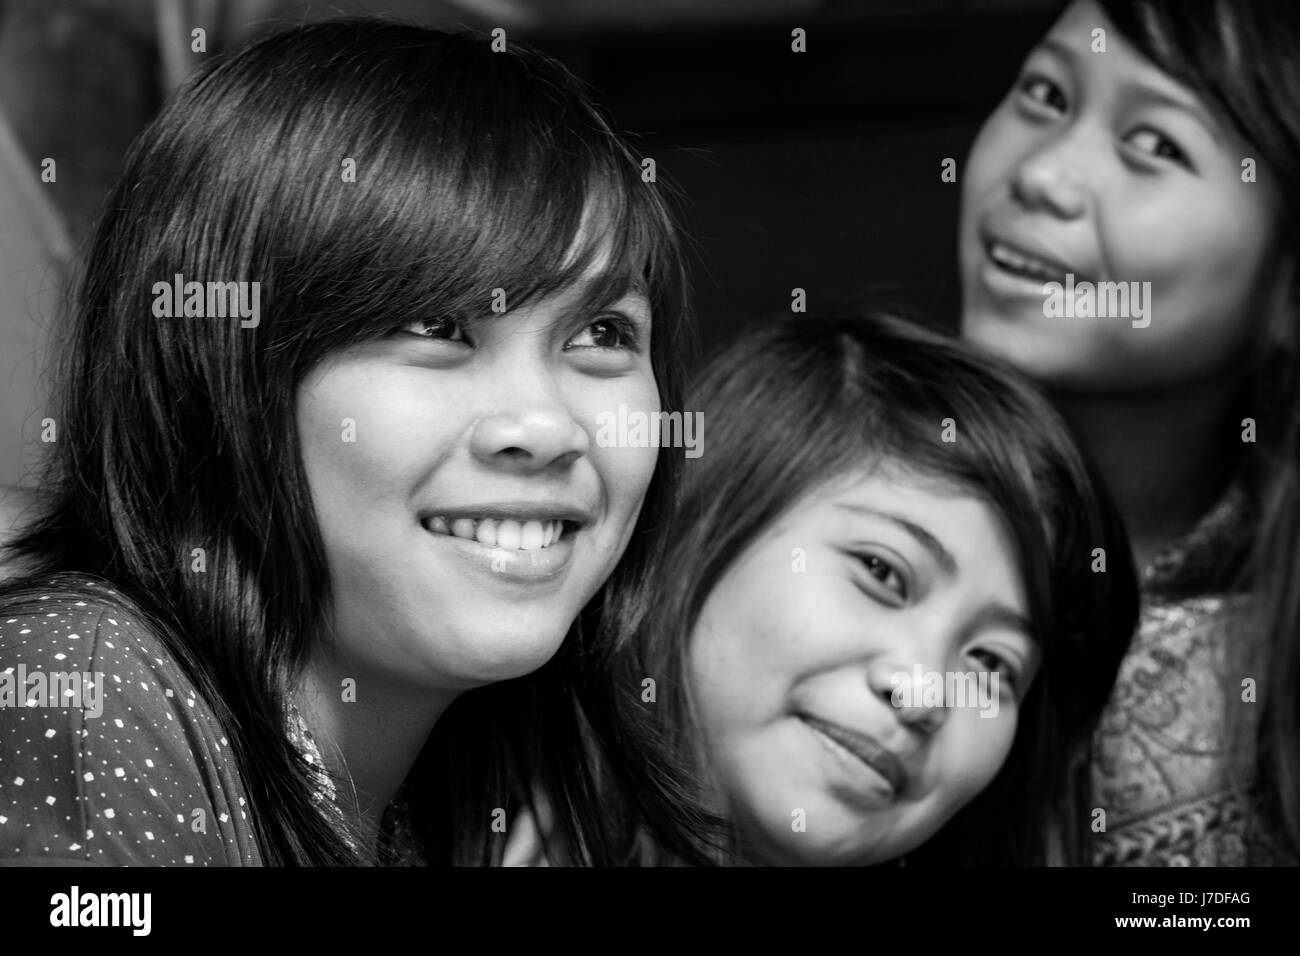 Belle ragazze dalla Tana Toraja etnico gruppo di minoranza. Close-up volto ritratto in bianco e nero. Stare insieme e amicizia incandescente dalle facce Foto Stock